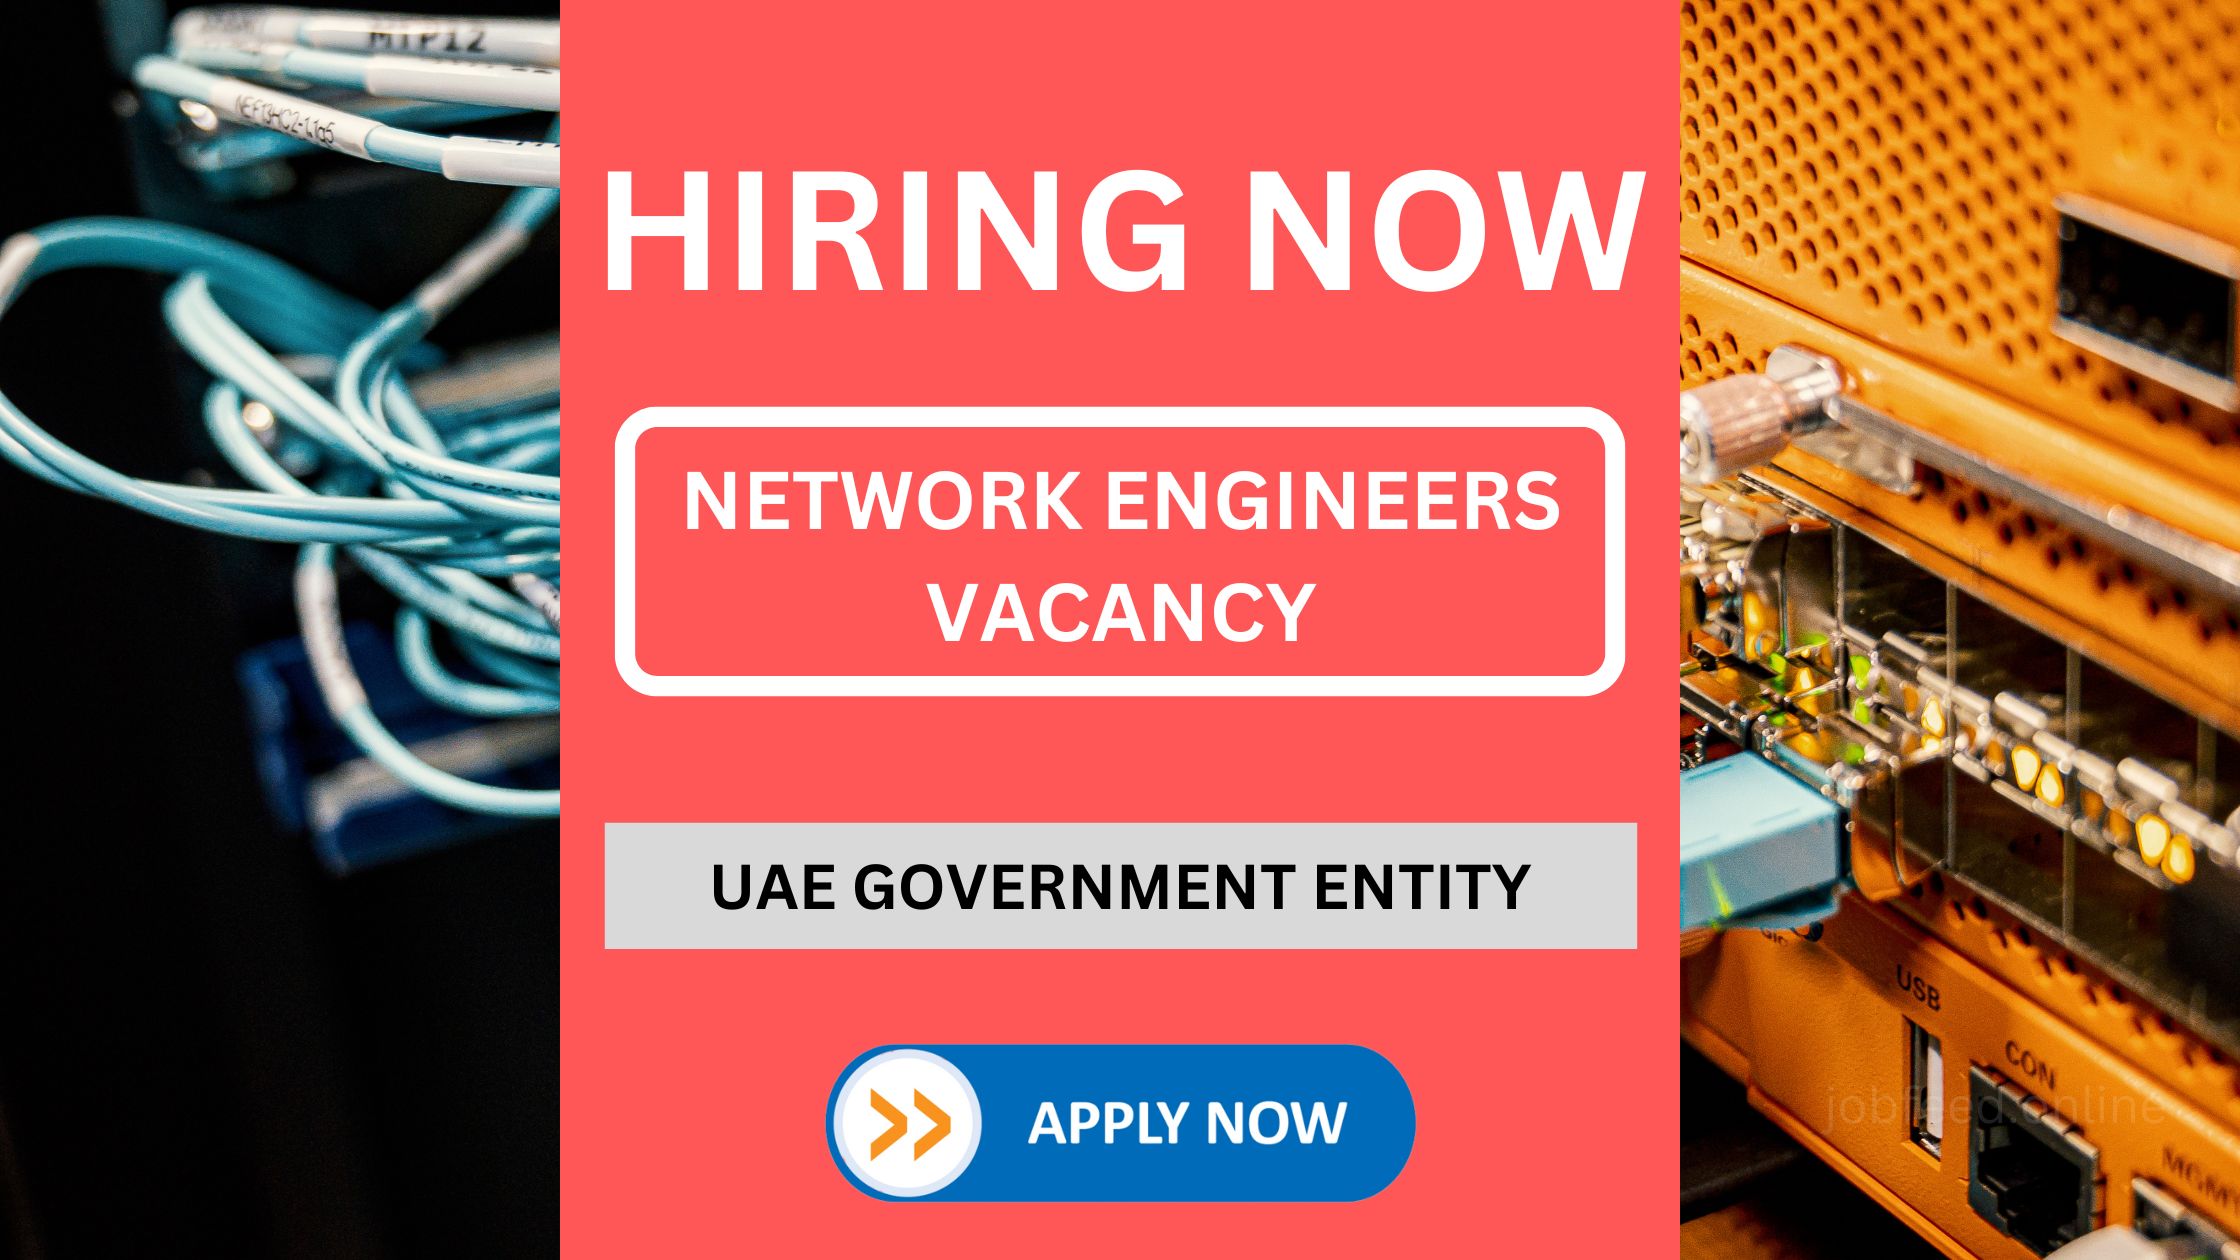 نیٹ ورک انجینئرز کی آسامی - متحدہ عرب امارات کے سرکاری ادارے کے لیے خدمات حاصل کرنا